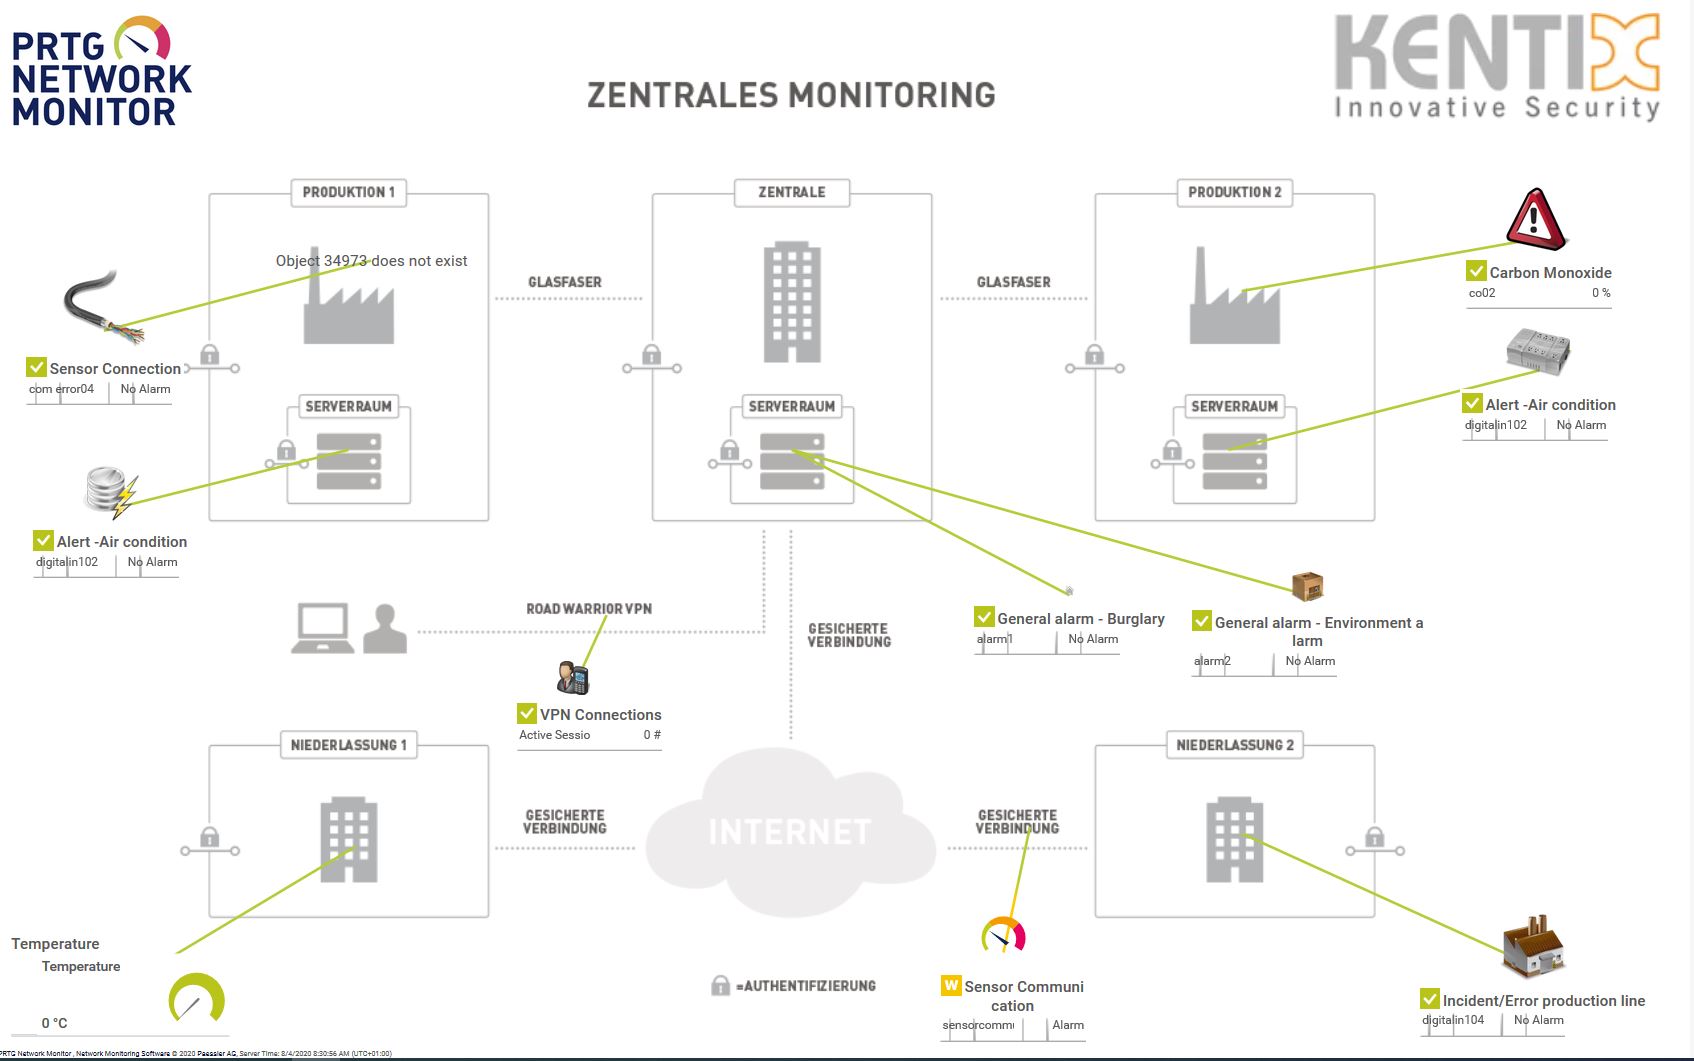 Monitoreo centralizado de infraestructuras remotas